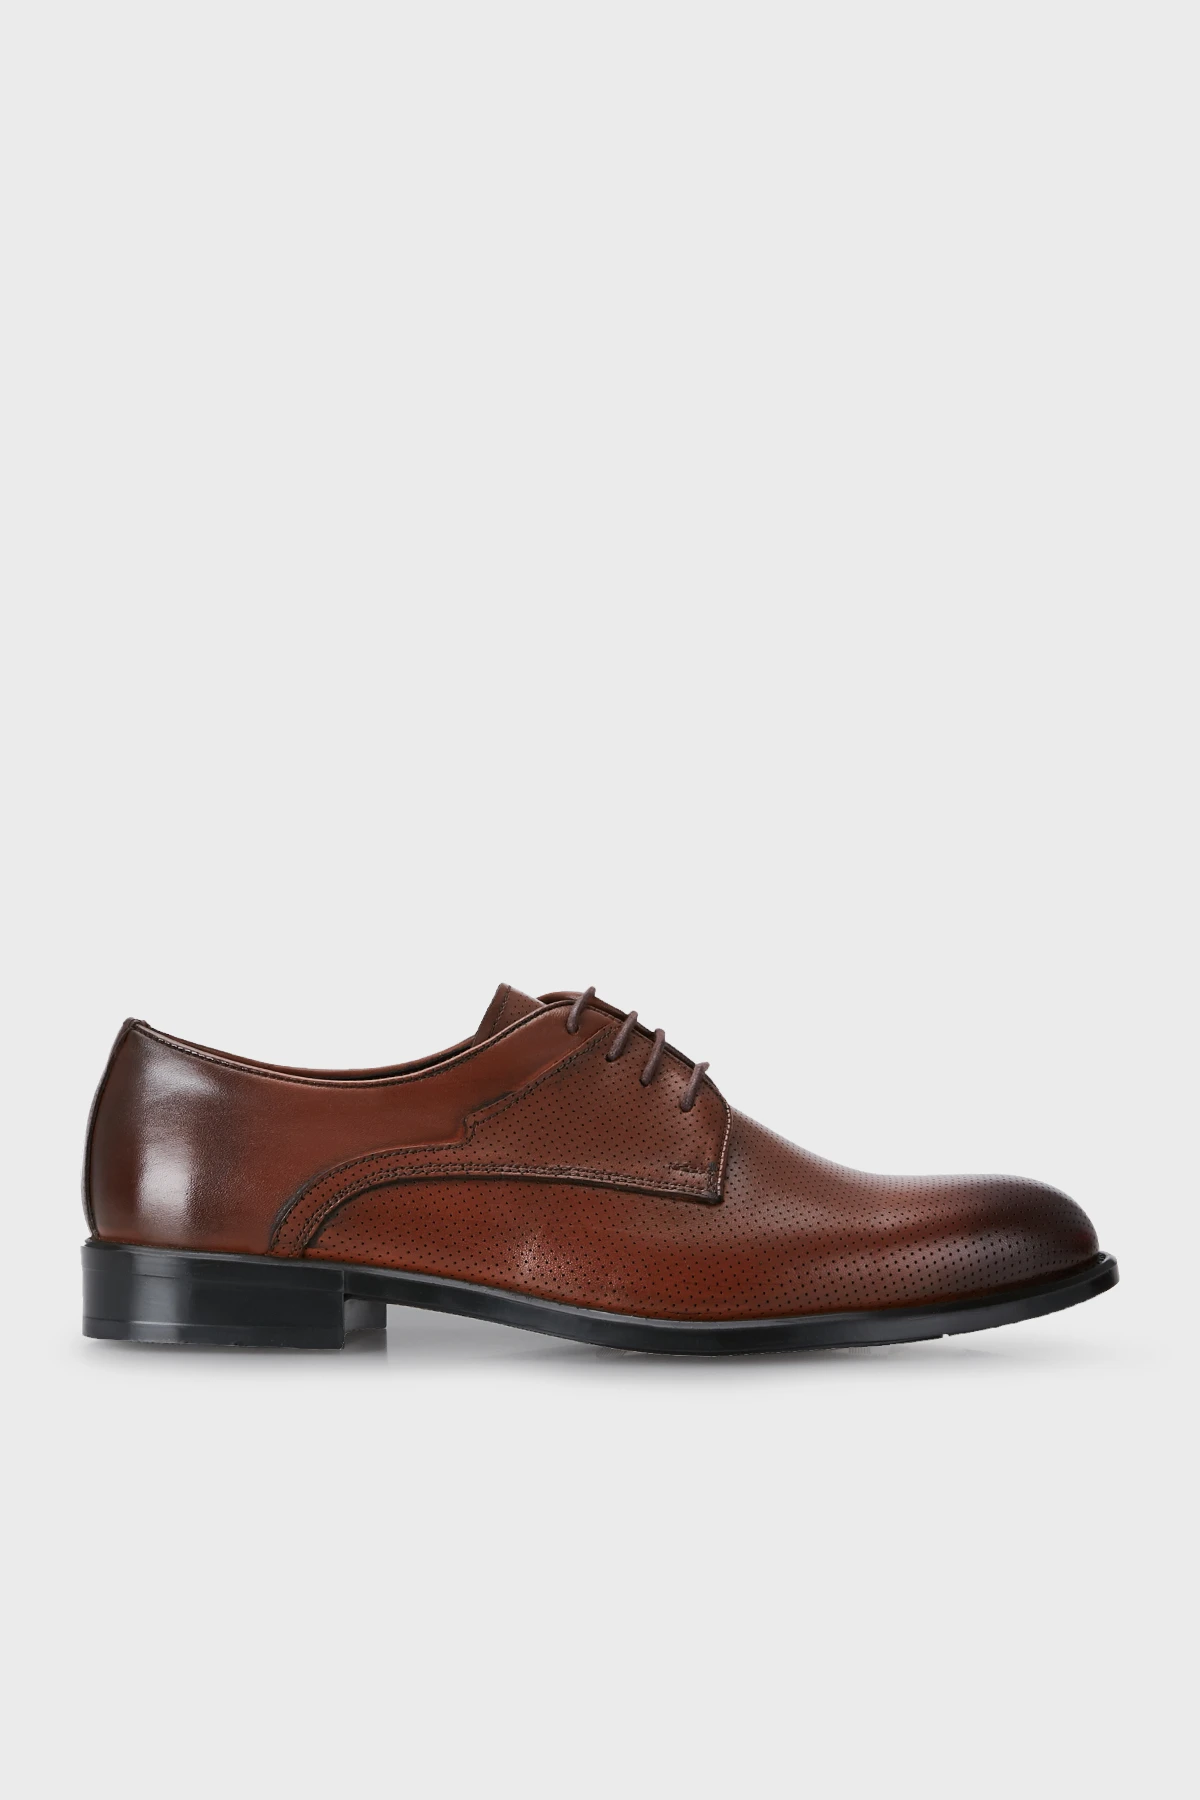 Rossi Leer Klassieke Mannen Schoenen schoenen voor Mannen| - AliExpress